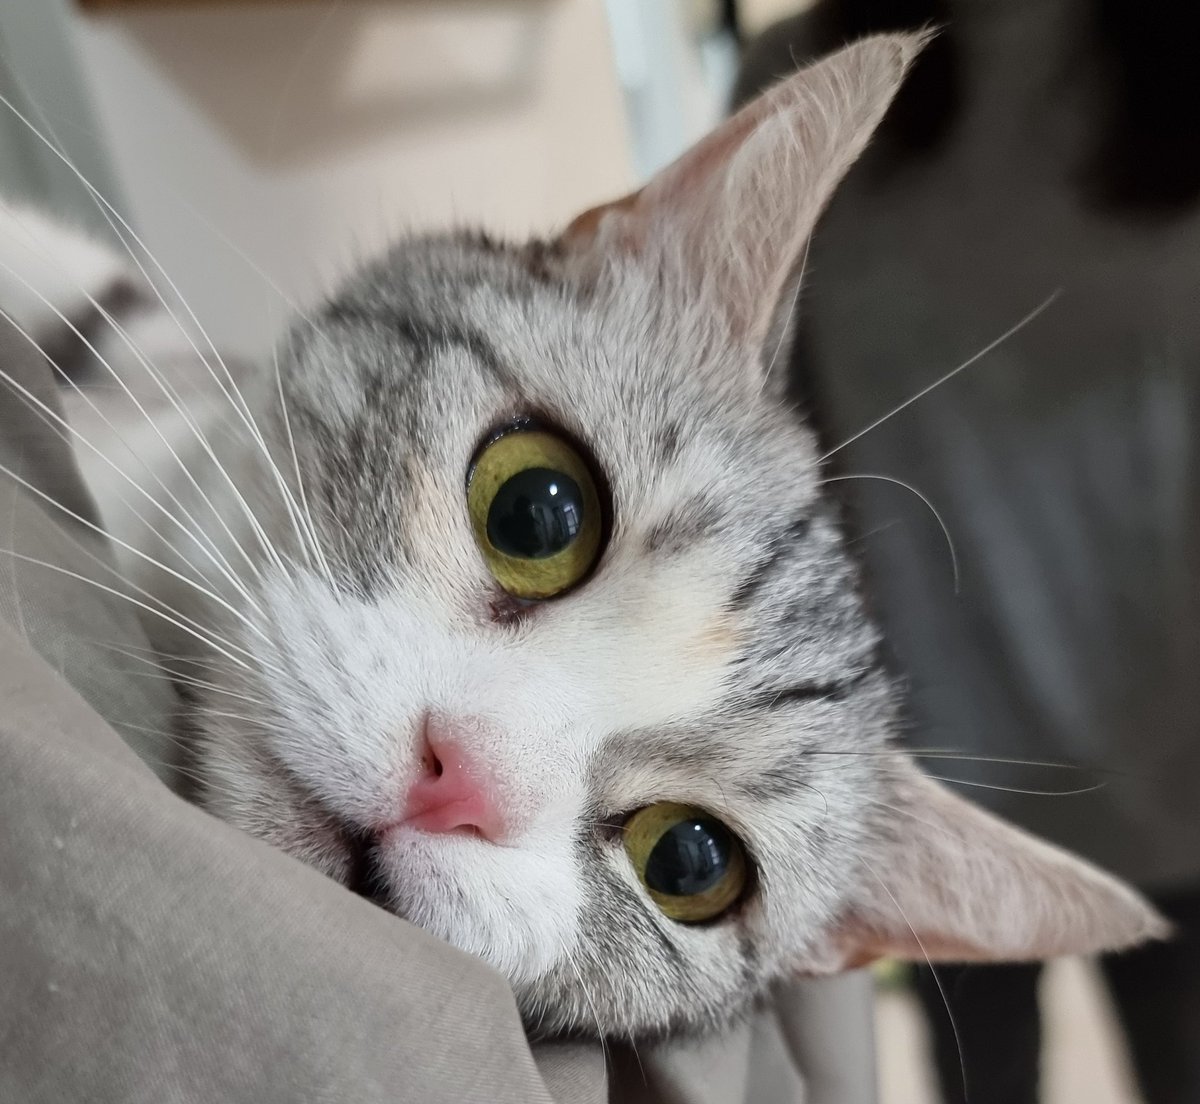 오늘 임보처 가기 전에 잠깐 만난 고양이 이번 남양주 번식장에서 구조된 레리에요! #나비야사랑해_레리 #가족을기다려요